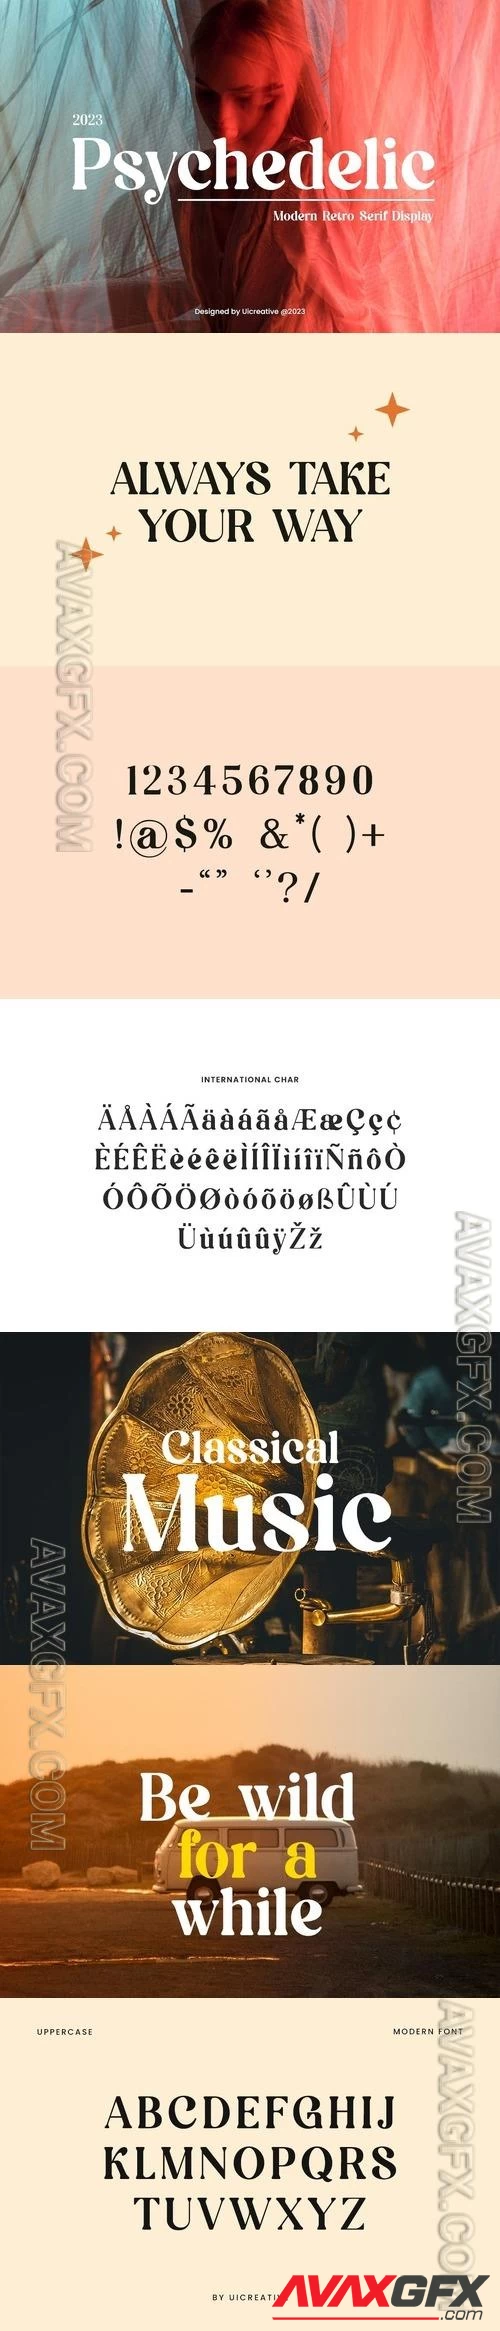 Psychedelic Modern Retro Serif Font [OTF, TTF]